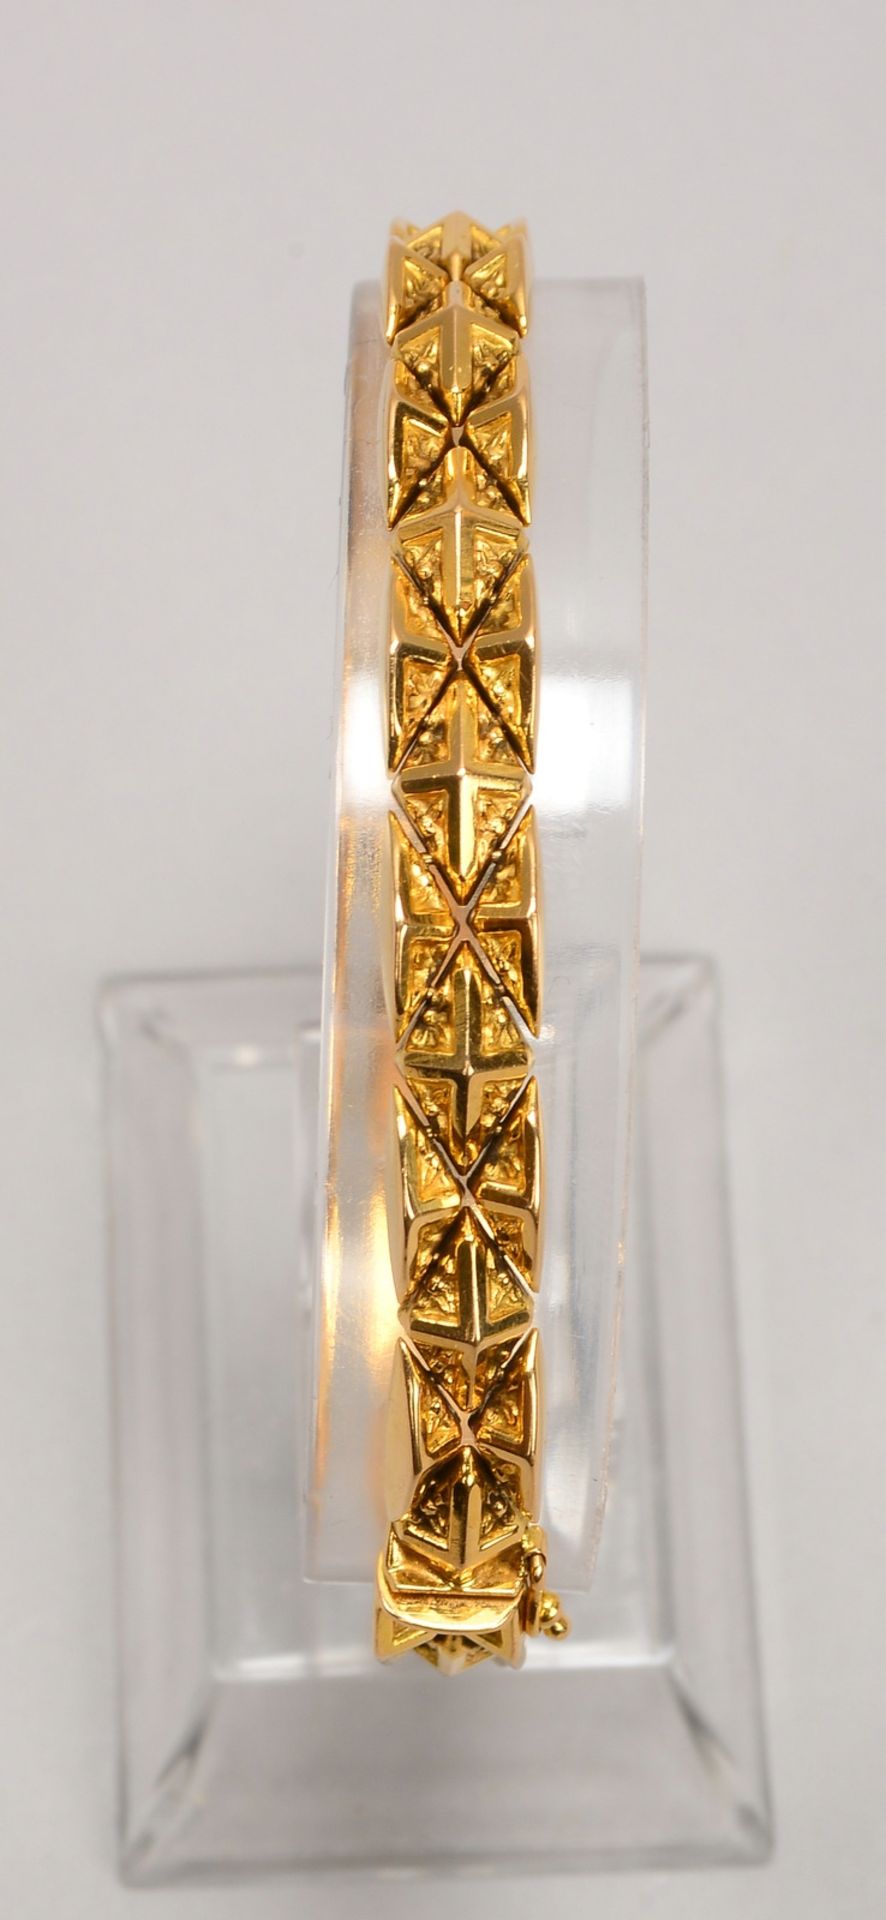 Armband, 750 GG (gestempelt), mit Steckschließe; Länge 18,5 cm, Gewicht 16 g - Bild 2 aus 2